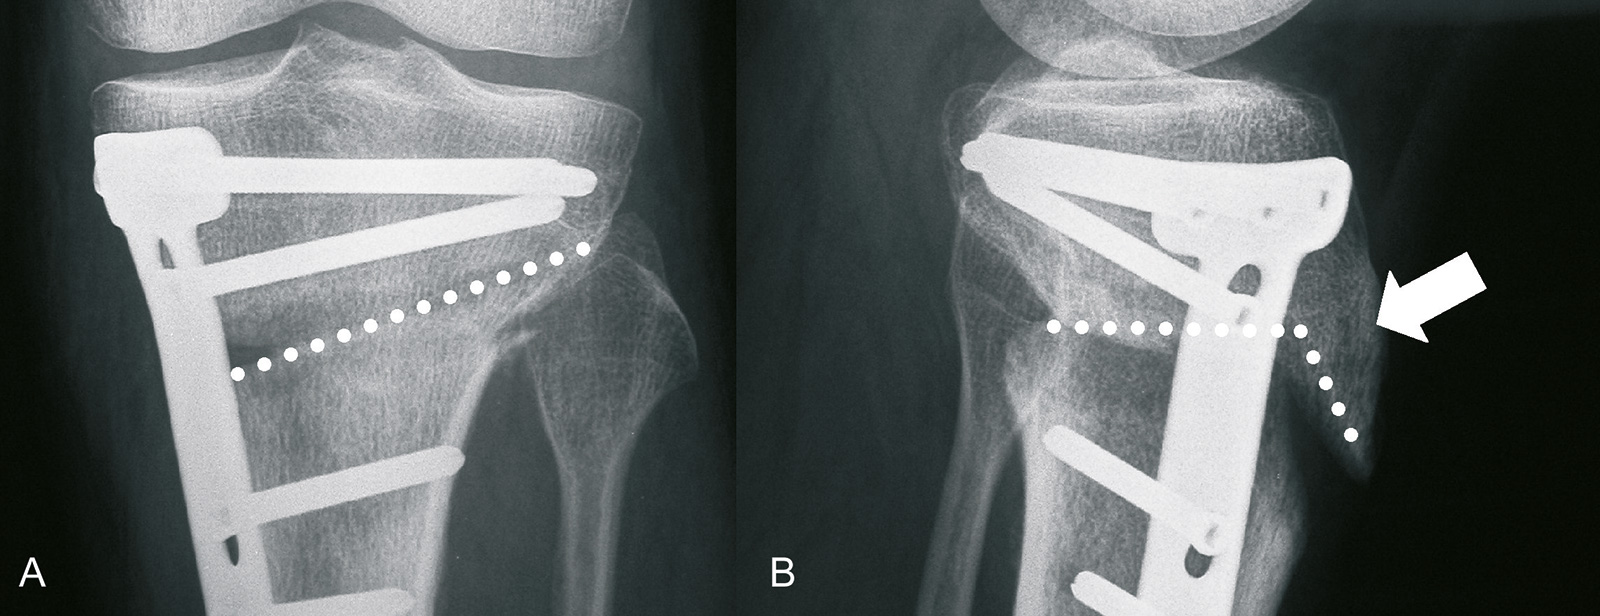 Abb. 1-35: Aufklappende Osteotomie: die Osteotomie verläuft ansteigend in Richtung auf die Spitze des Wadenbeinköpfchens (A), dabei verbleibt die Tuberositas tibiae am proximalen Fragment (B)